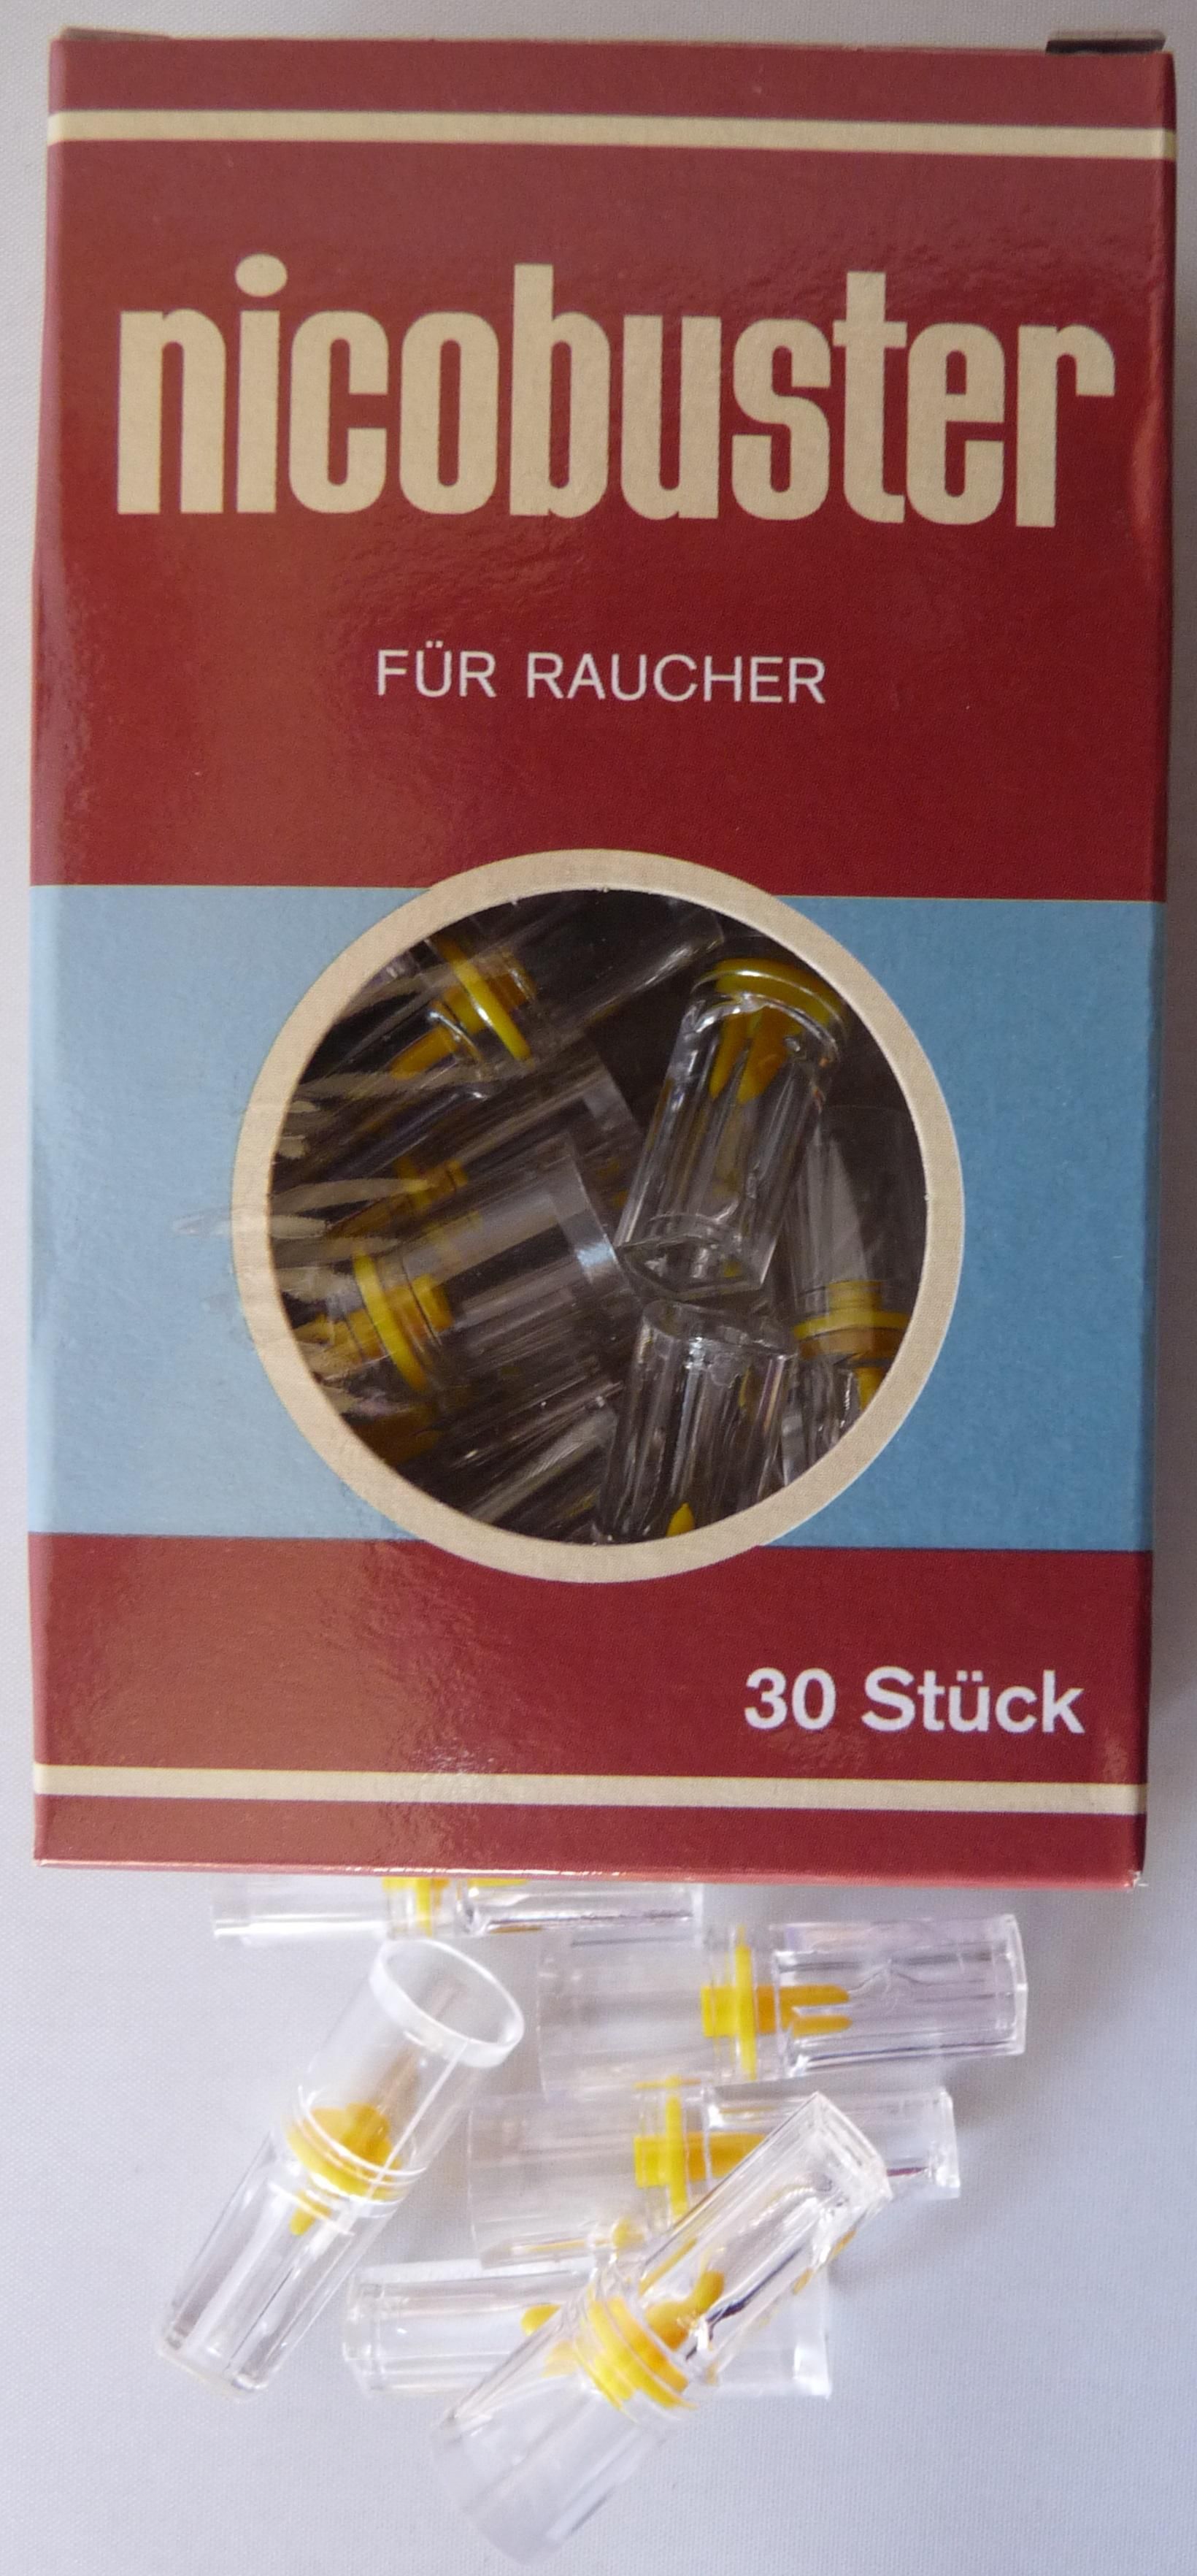 Nicobuster Microfilter Zigarettenspitze 30 Stück